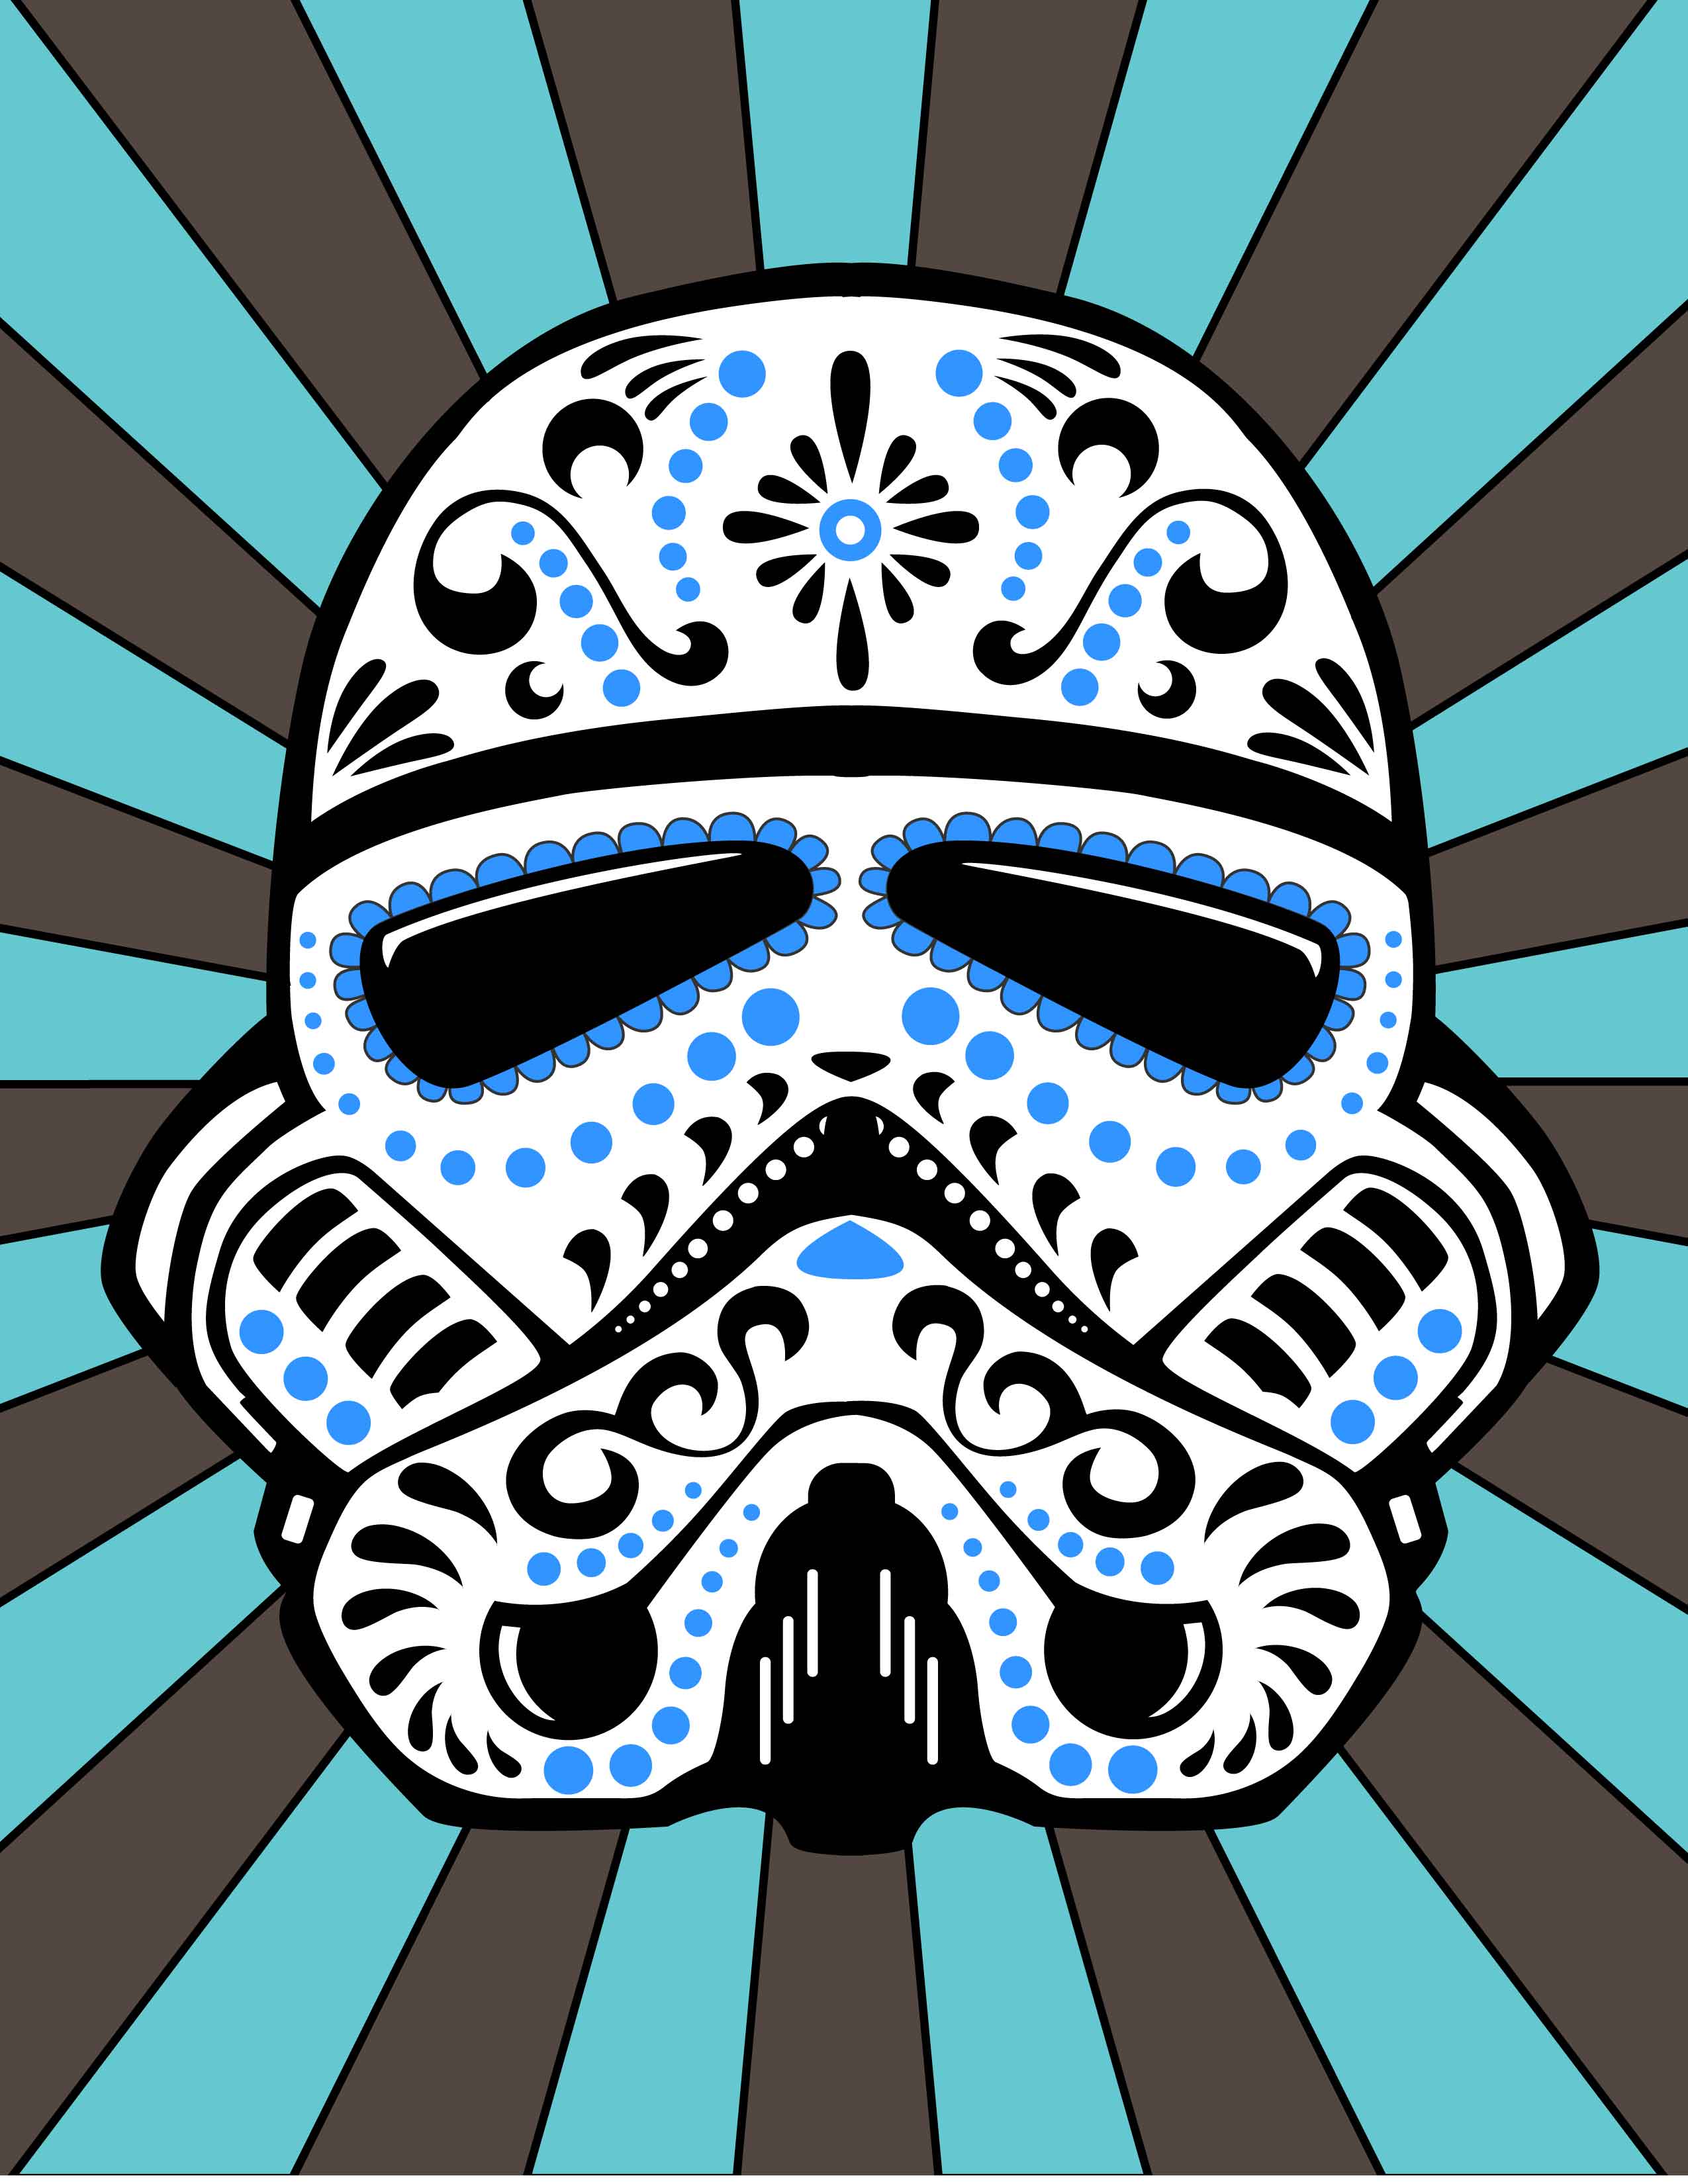 stormtrooper[David G. ].jpg